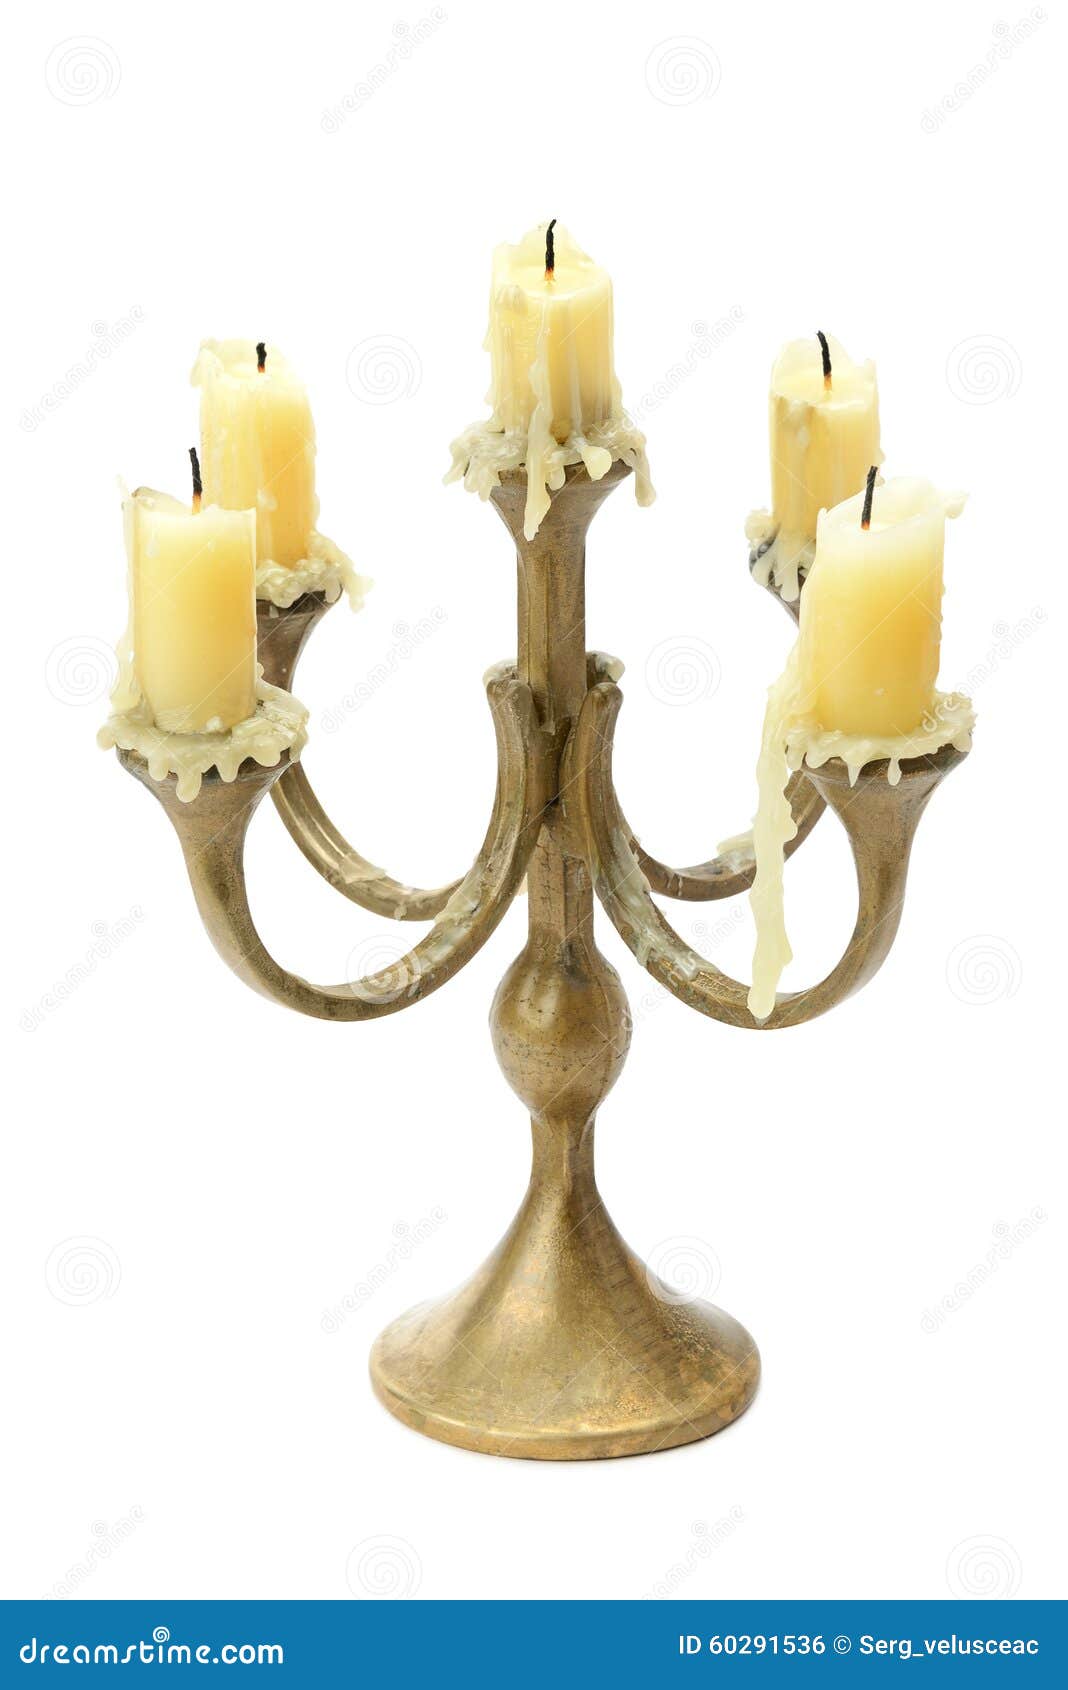 bronze candelabrum  on white